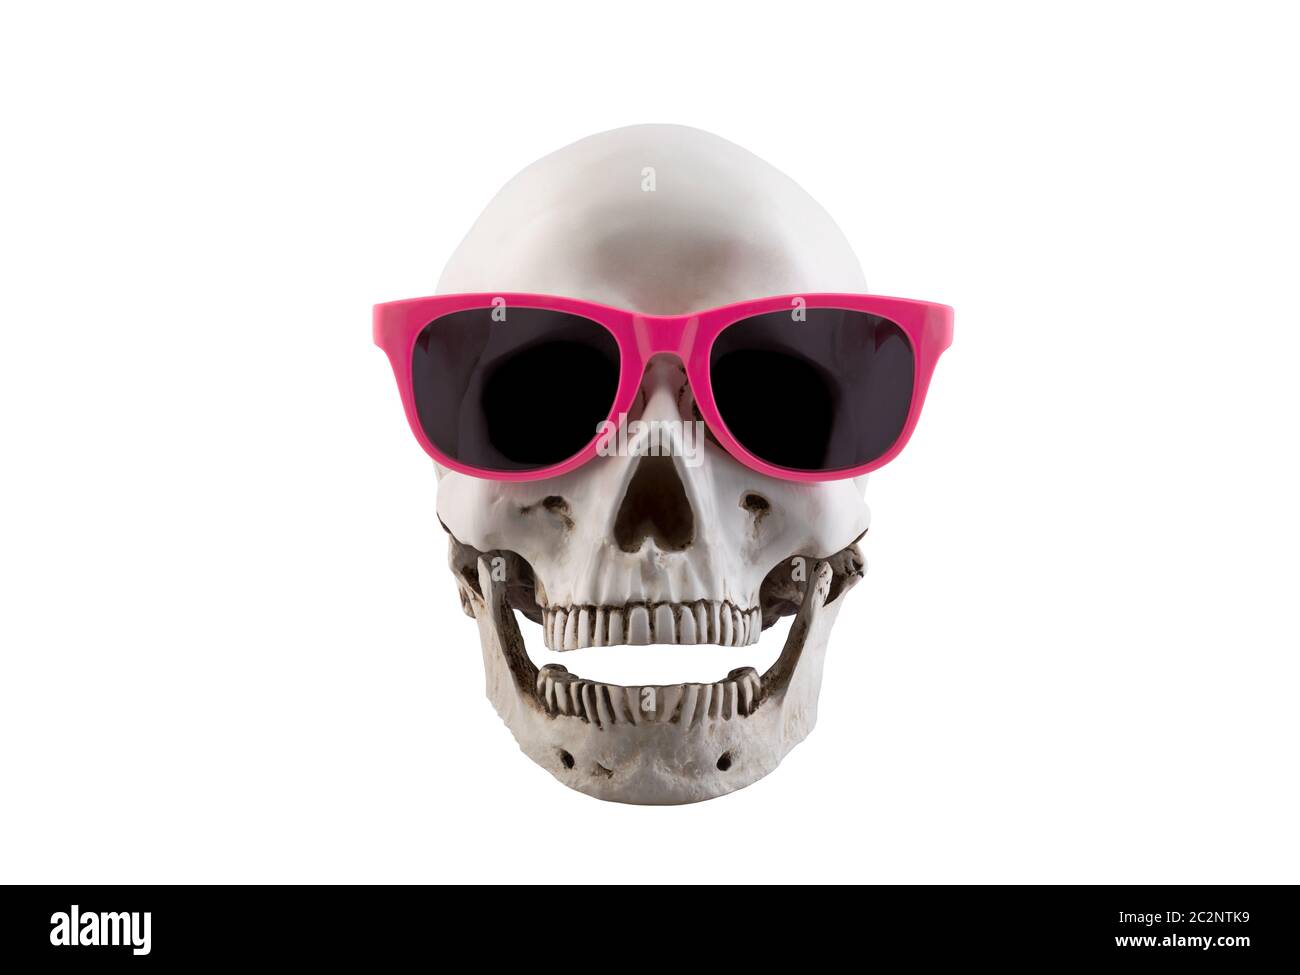 Cranio umano con occhiali rosa e aprire la ganascia isolato su sfondo bianco con tracciato di ritaglio Foto Stock